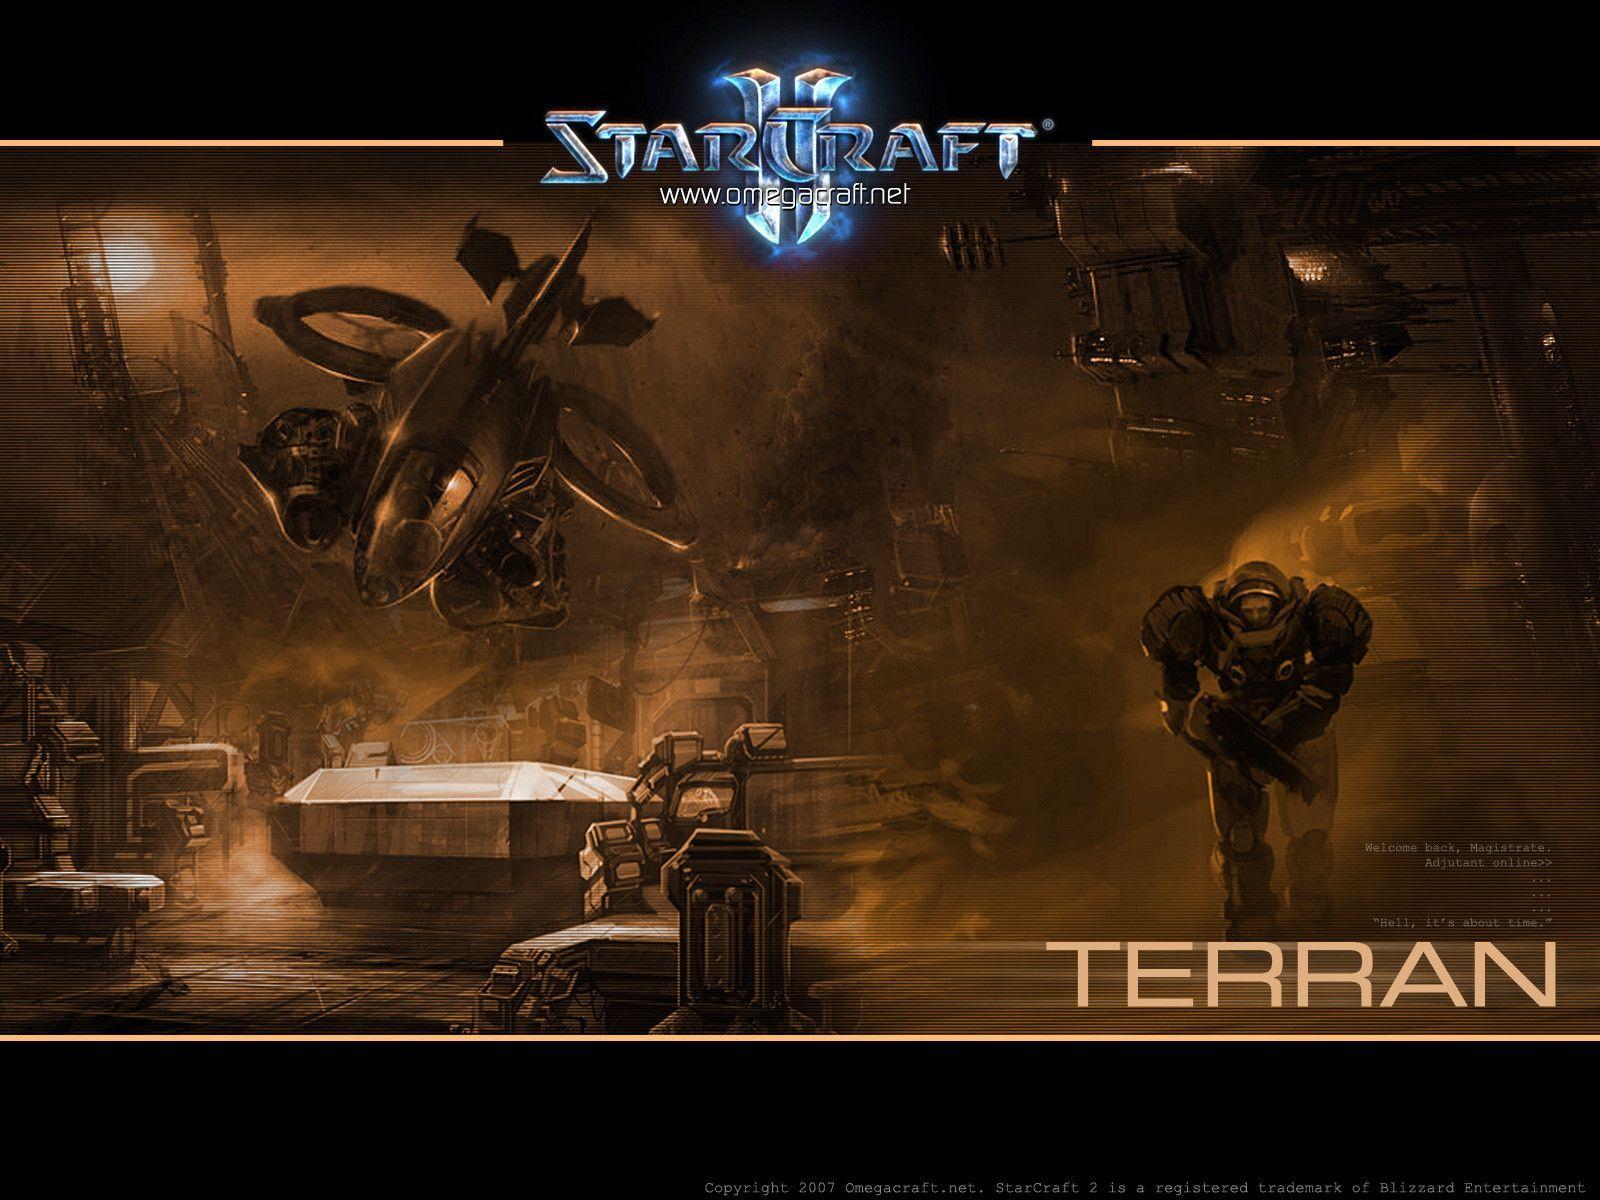 Starcraft 2 Wallpaper Terran